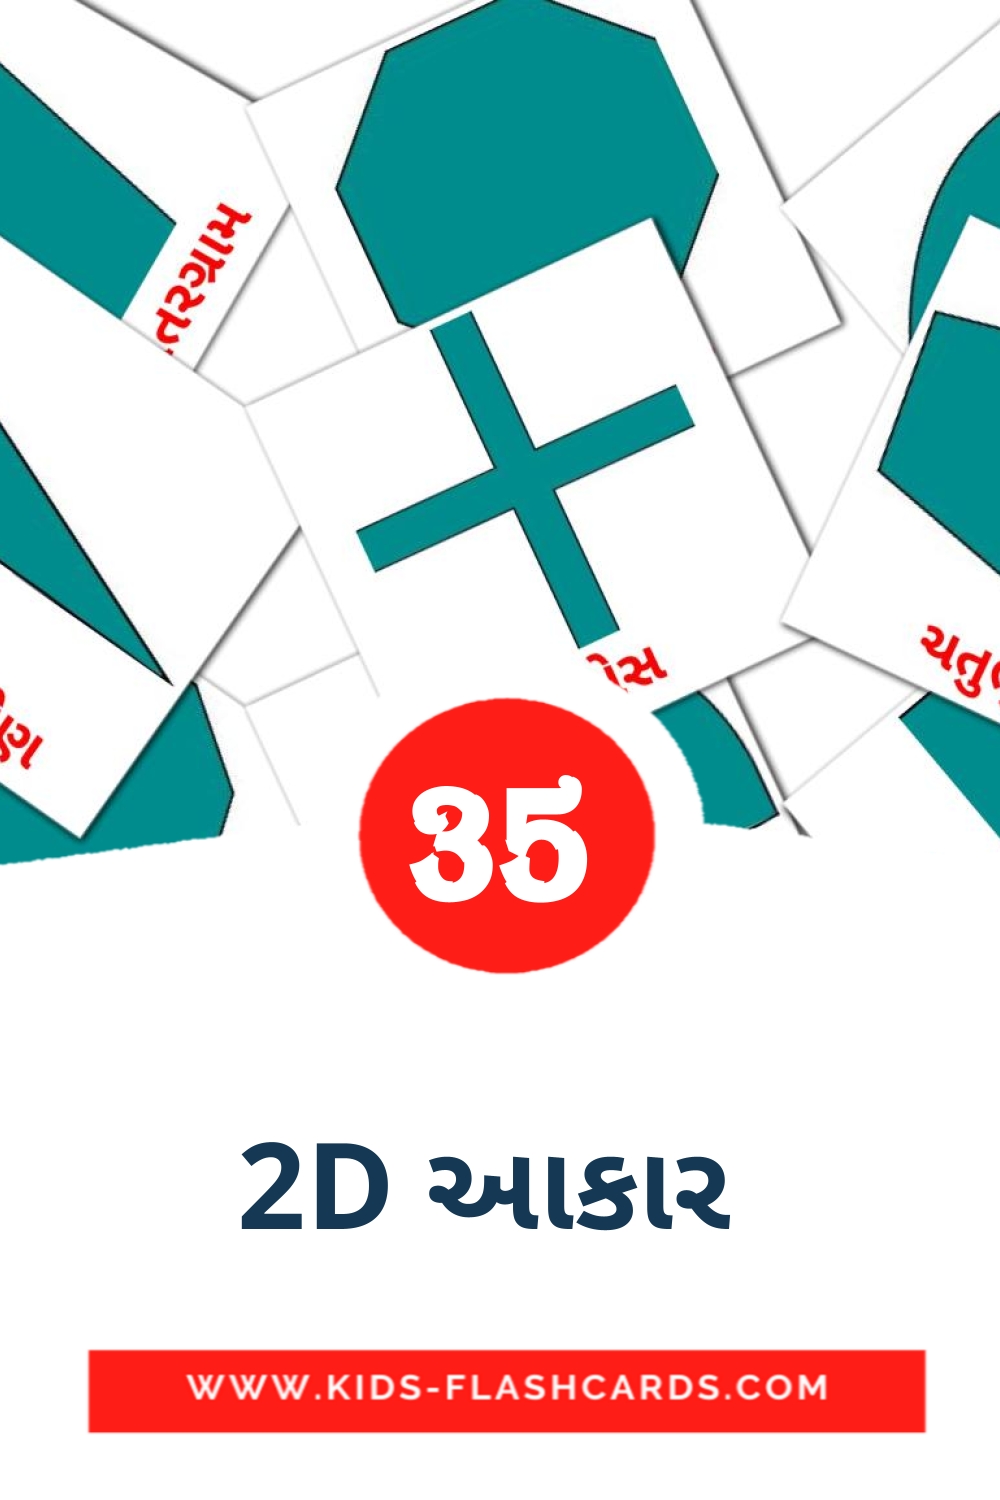 35 Cartões com Imagens de 2D આકાર  para Jardim de Infância em gujarati